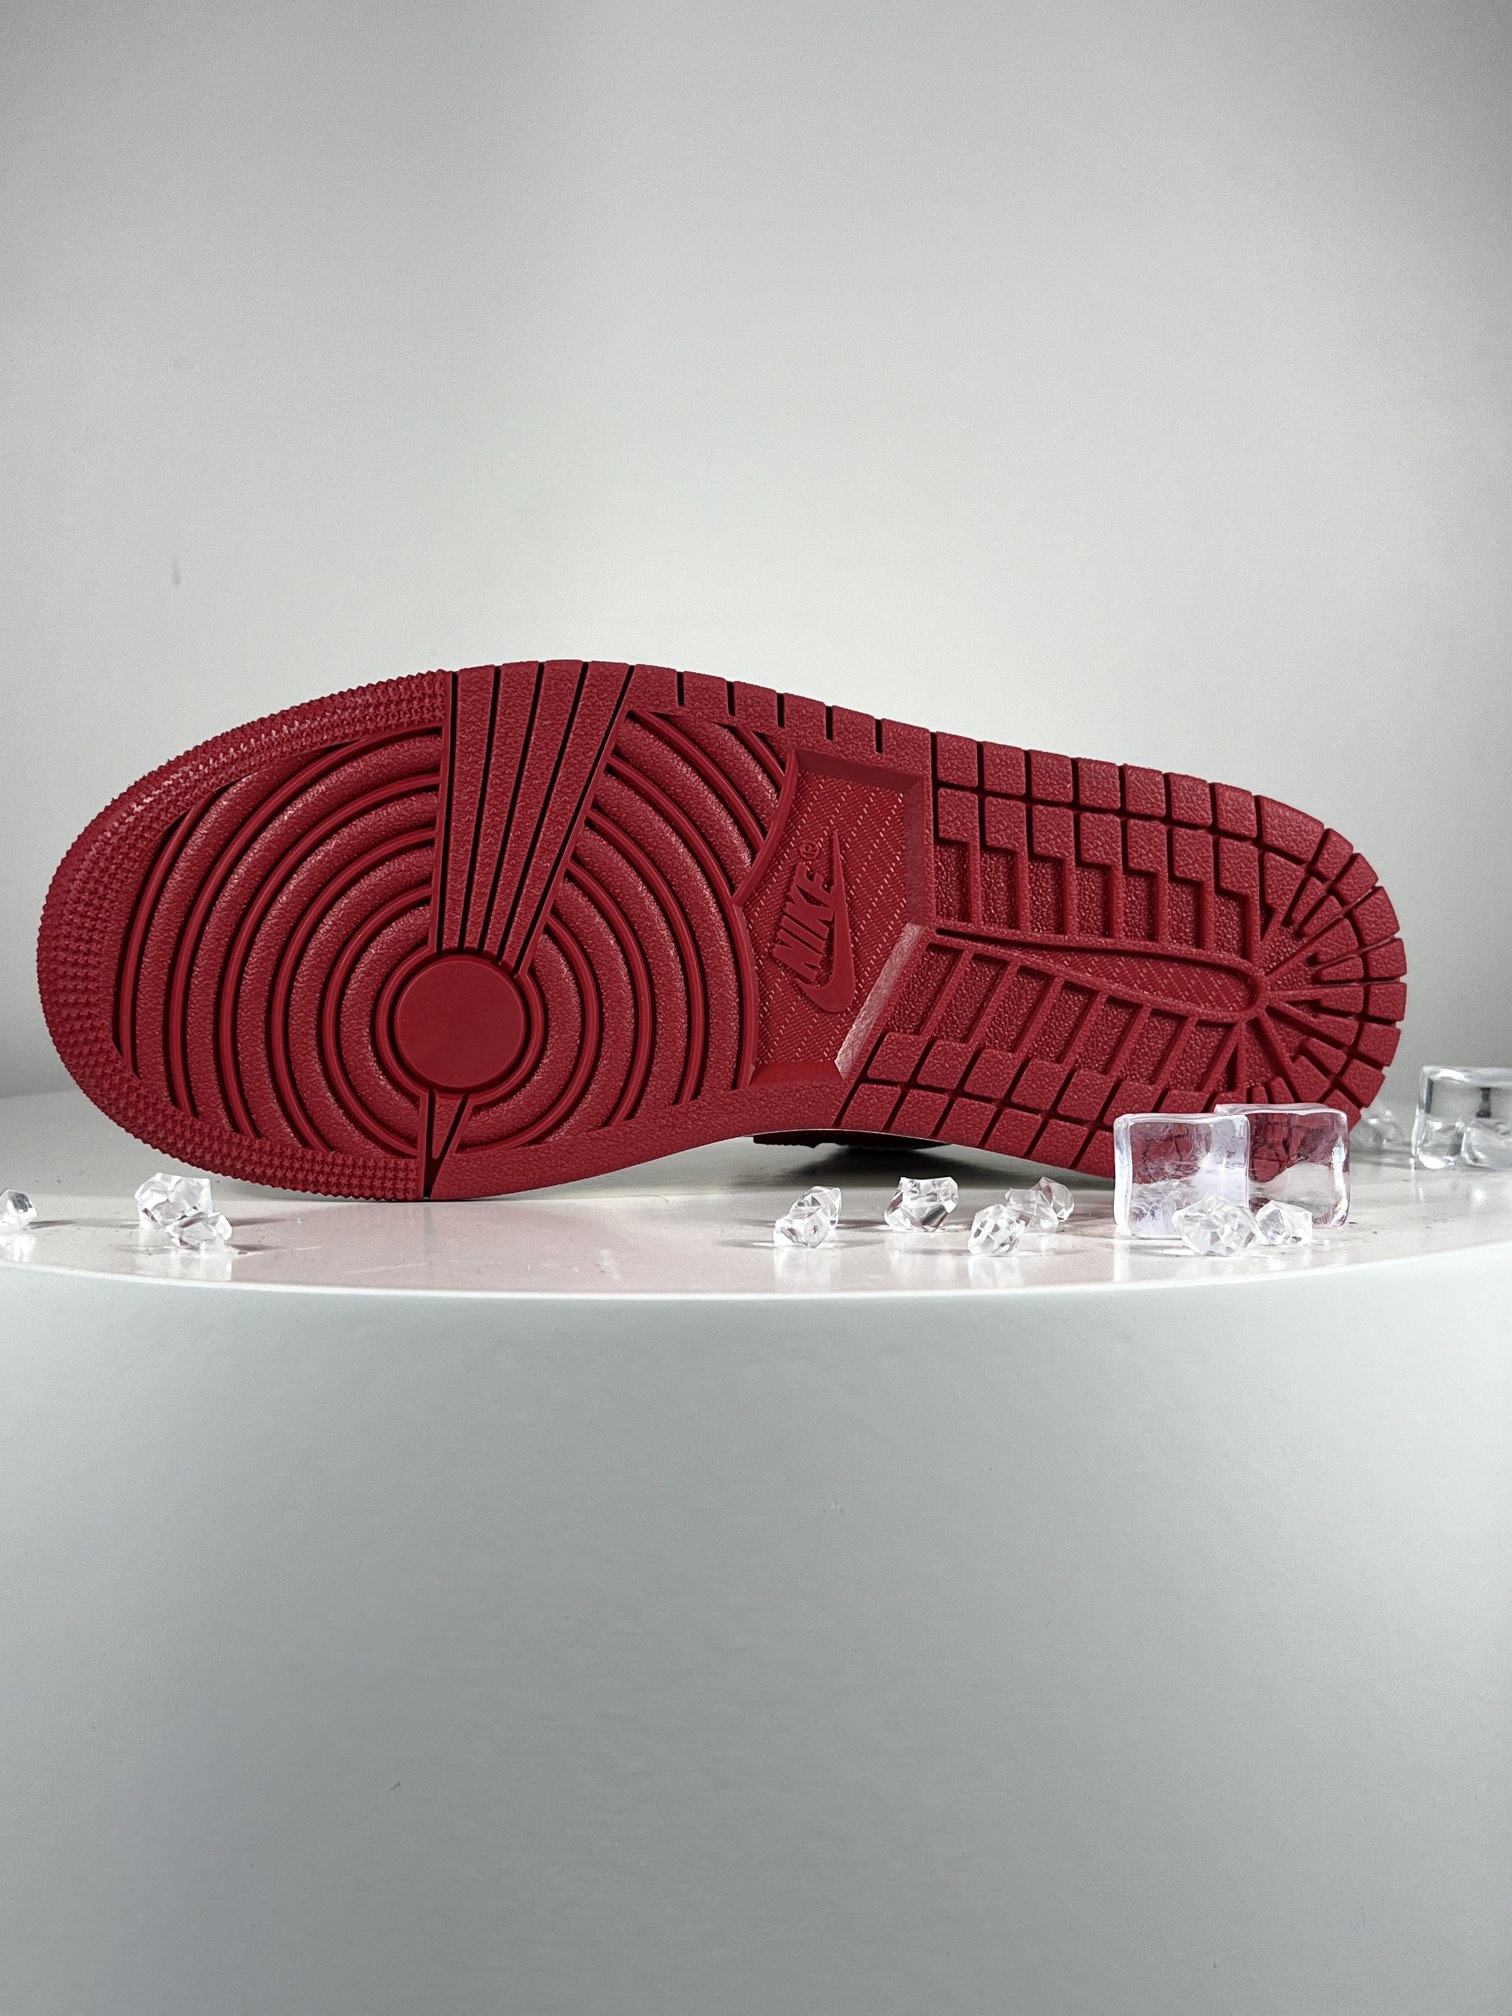 过验版AJ1Low低帮白红黑市售最强低帮天花板品质！市面唯一正确版本全鞋正品原材料货号DC0774-16